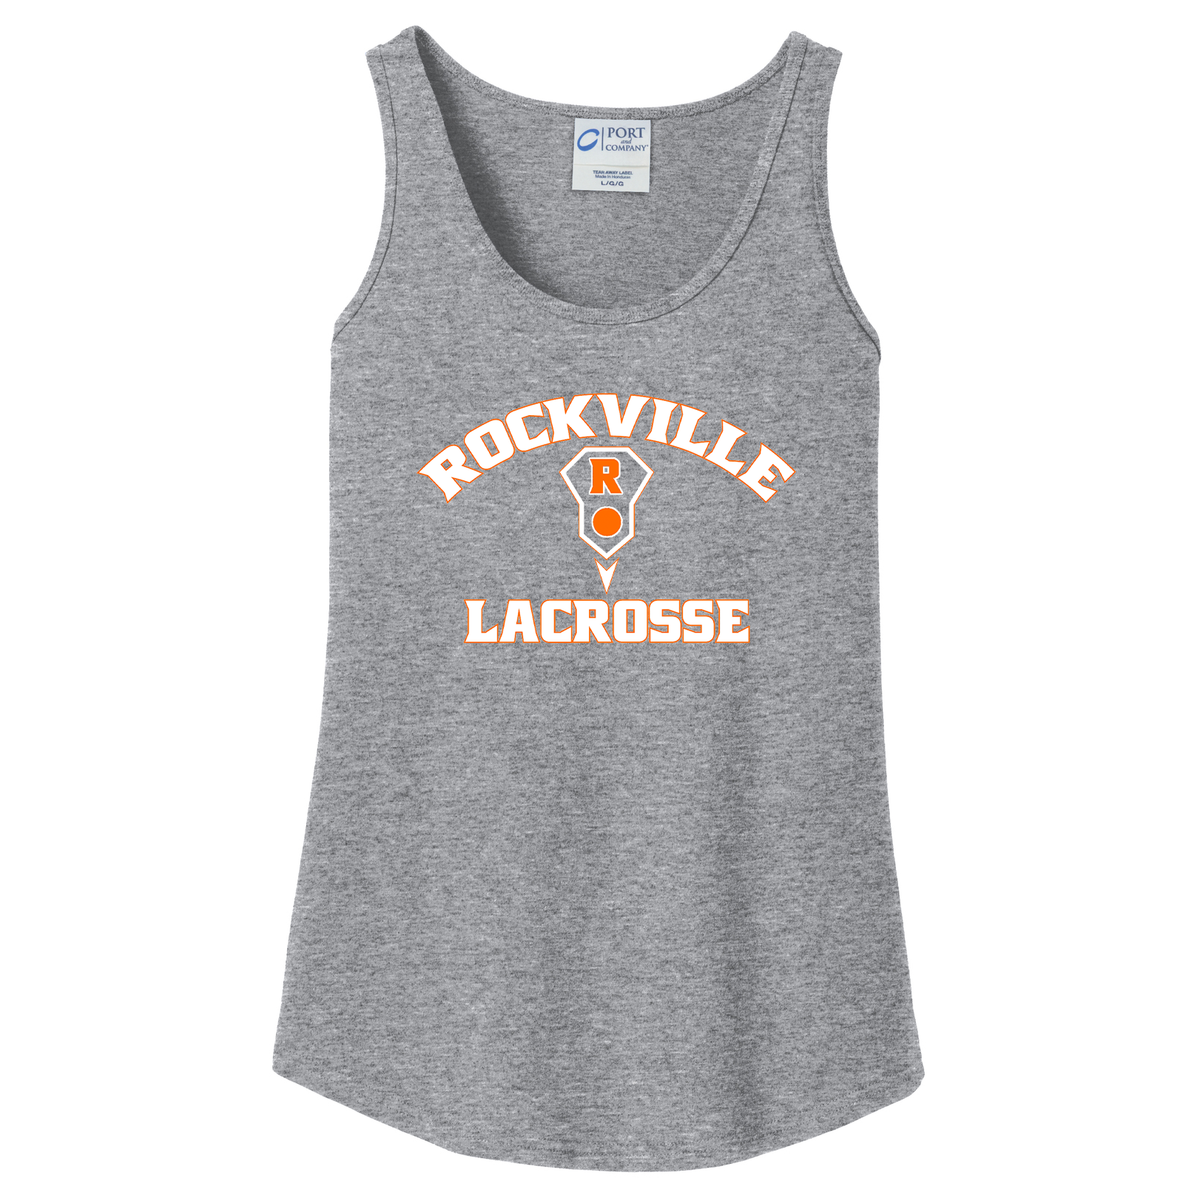 Rockville HS Girls Lacrosse Women's Tank Top